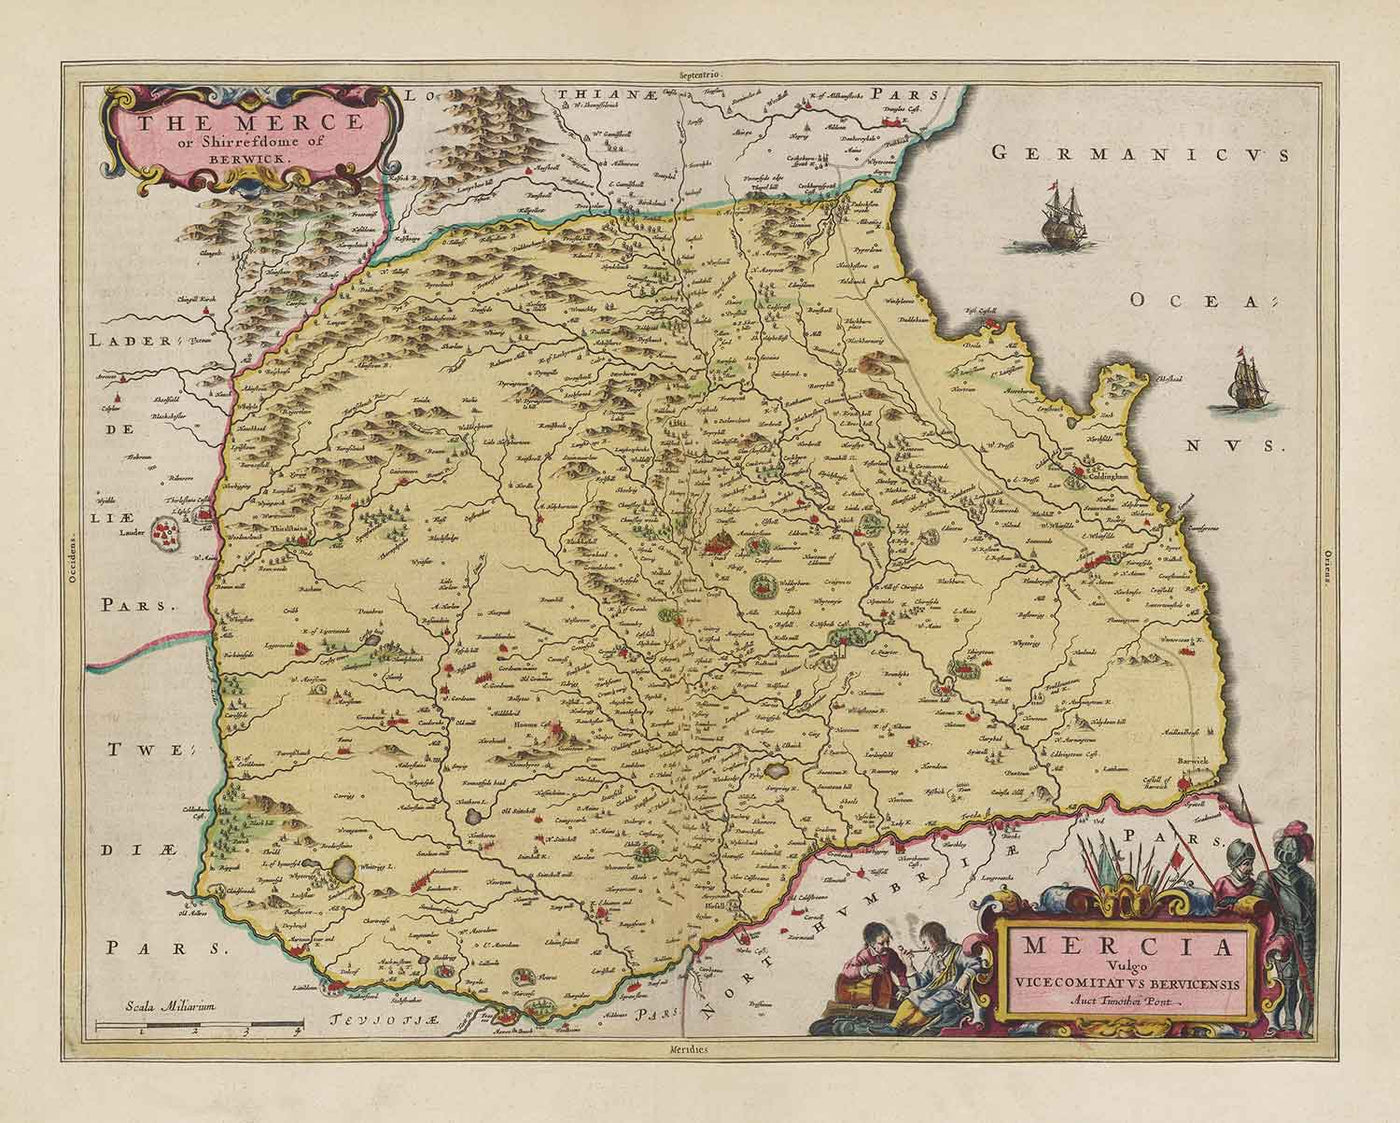 Alte Karte von Berwickshire im Jahr 1665 von Joan Blaeu - Eyemouth, Ayton, Coldingham, Tweedmouth, Hutton